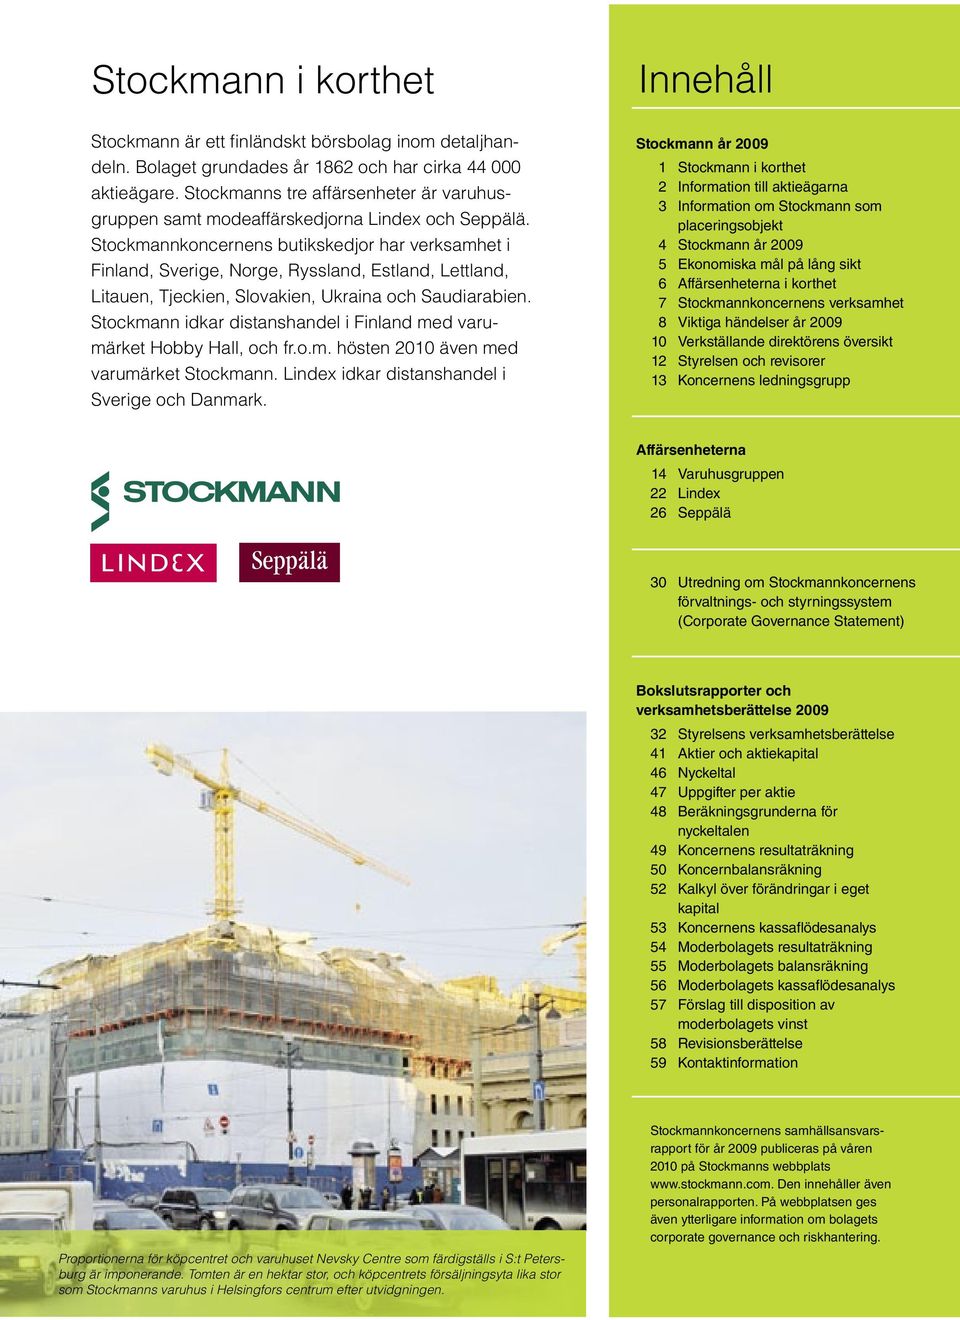 Stockmannkoncernens butikskedjor har verksamhet i Finland, Sverige, Norge, Ryssland, Estland, Lettland, Litauen, Tjeckien, Slovakien, Ukraina och Saudiarabien.